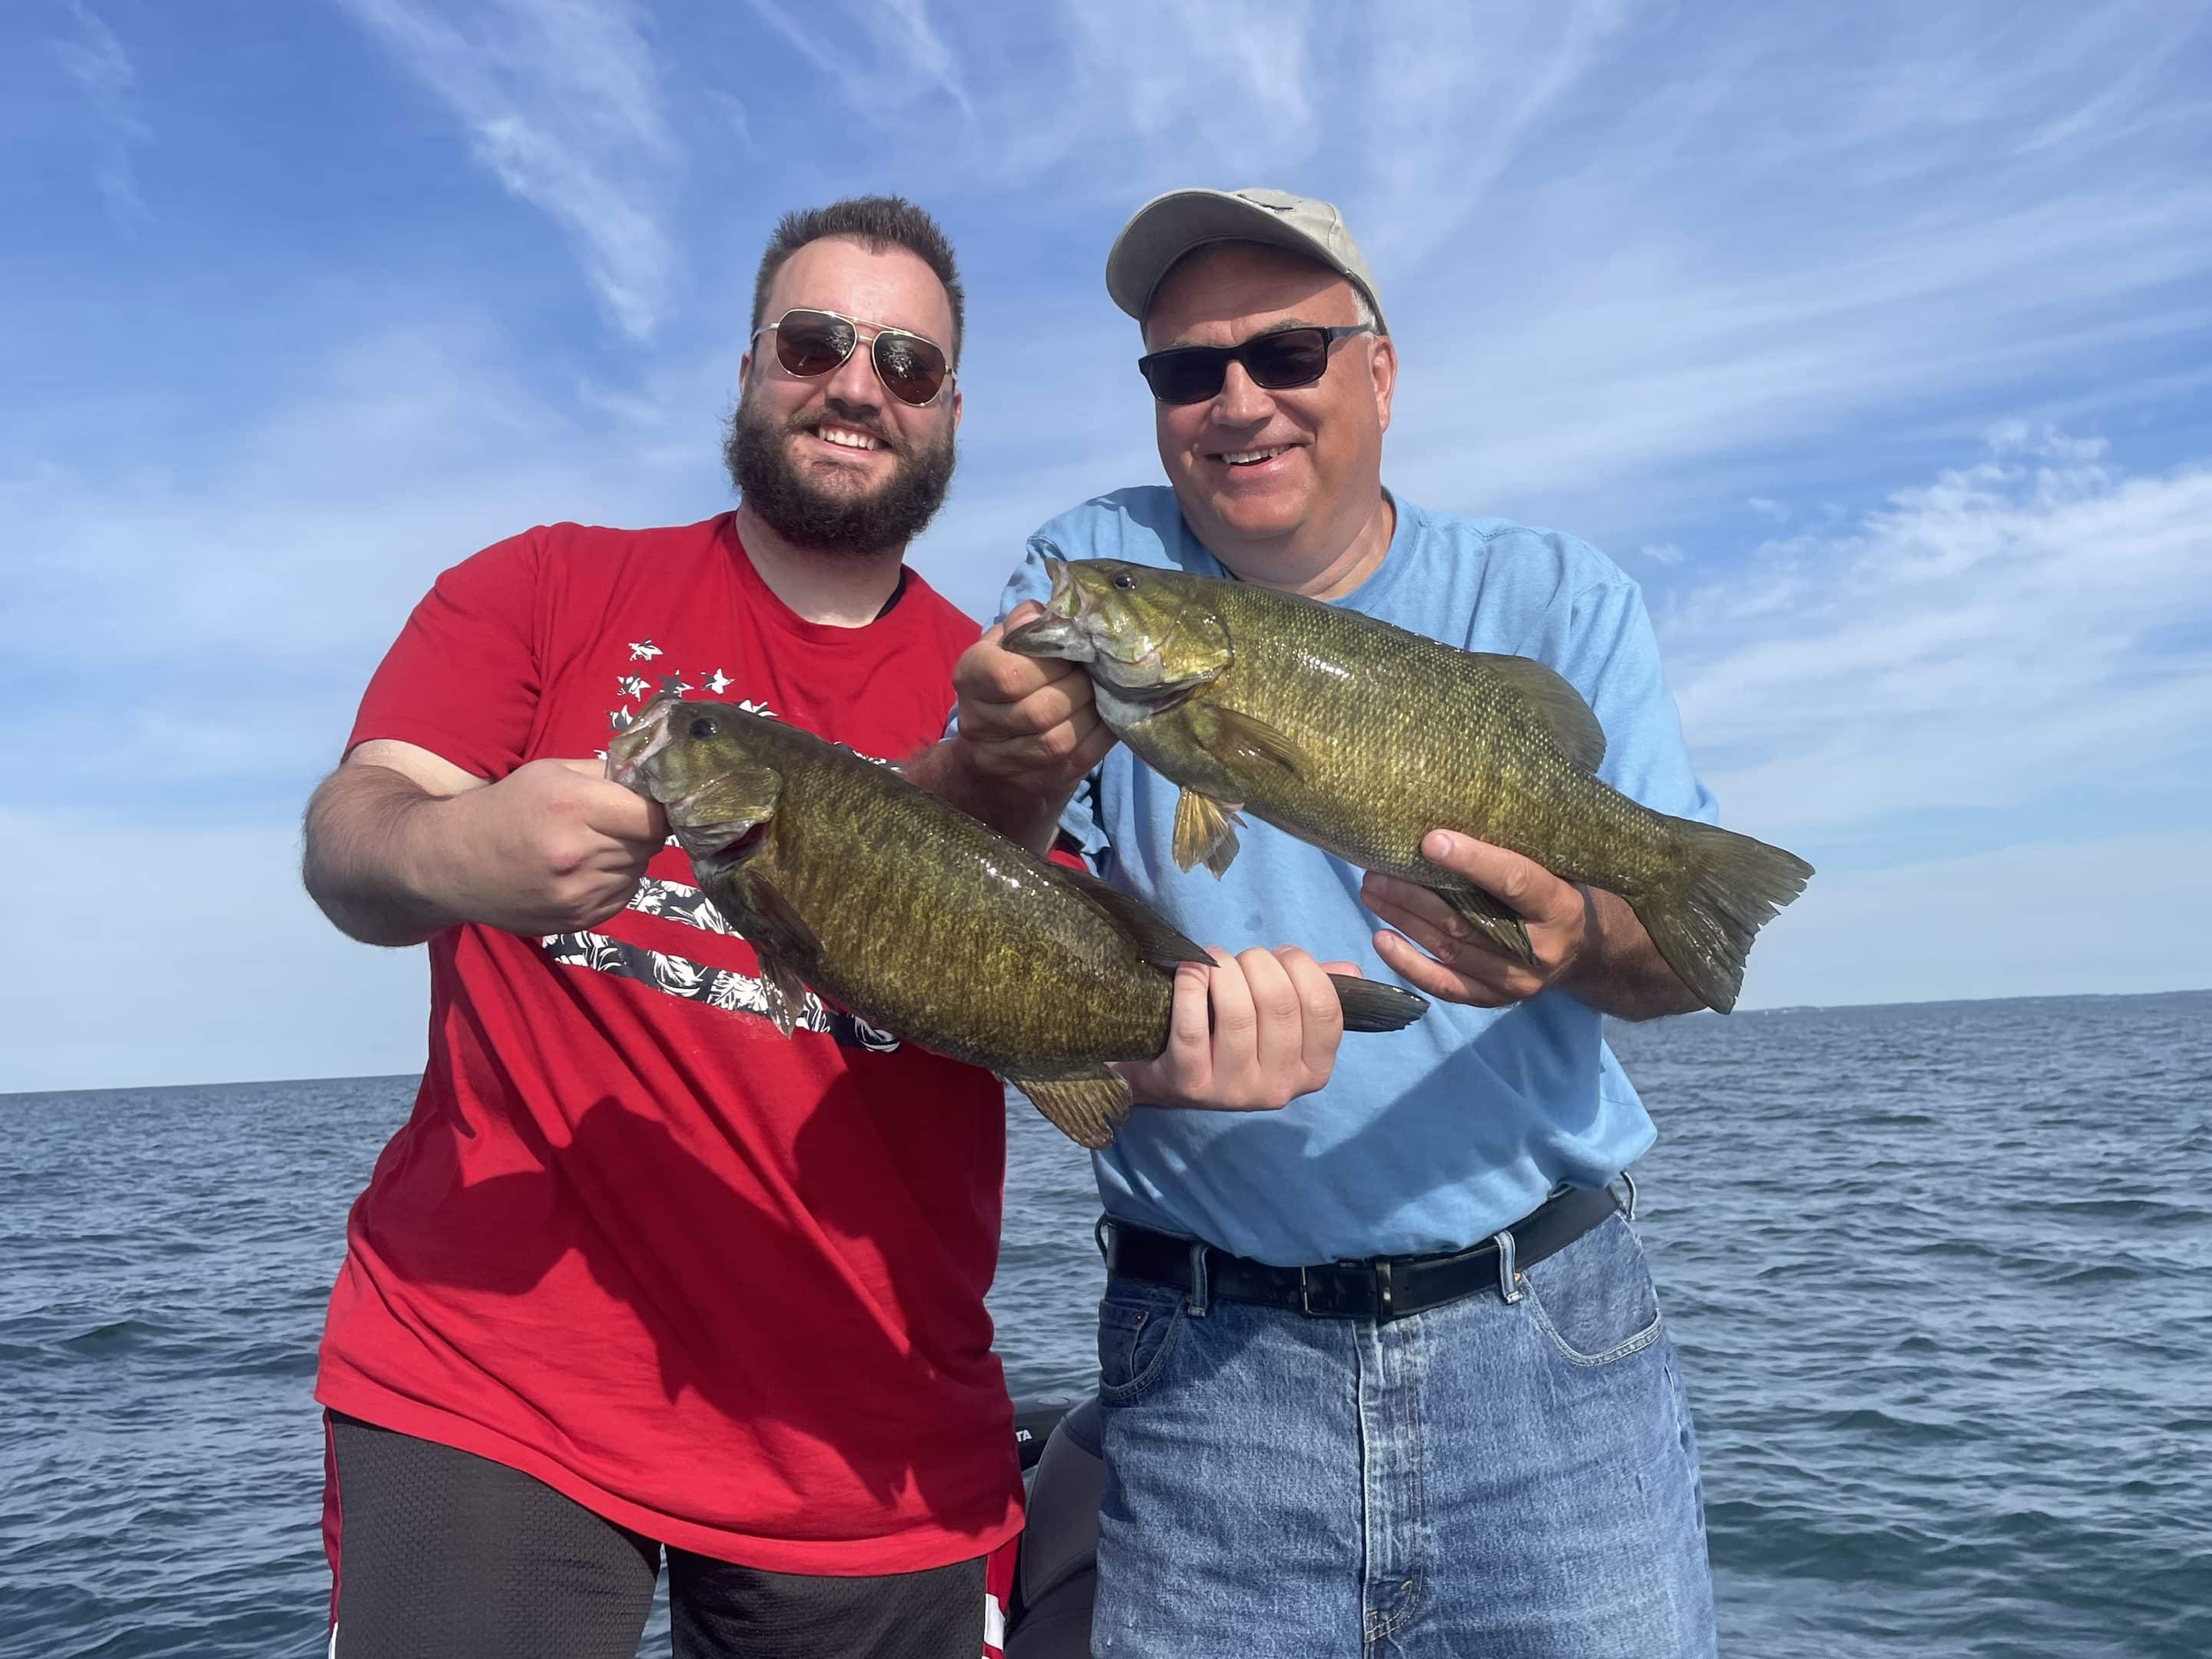 20220727 125249647 iOS scaled - Buffalo NY Fishing Report - 08/07/2022